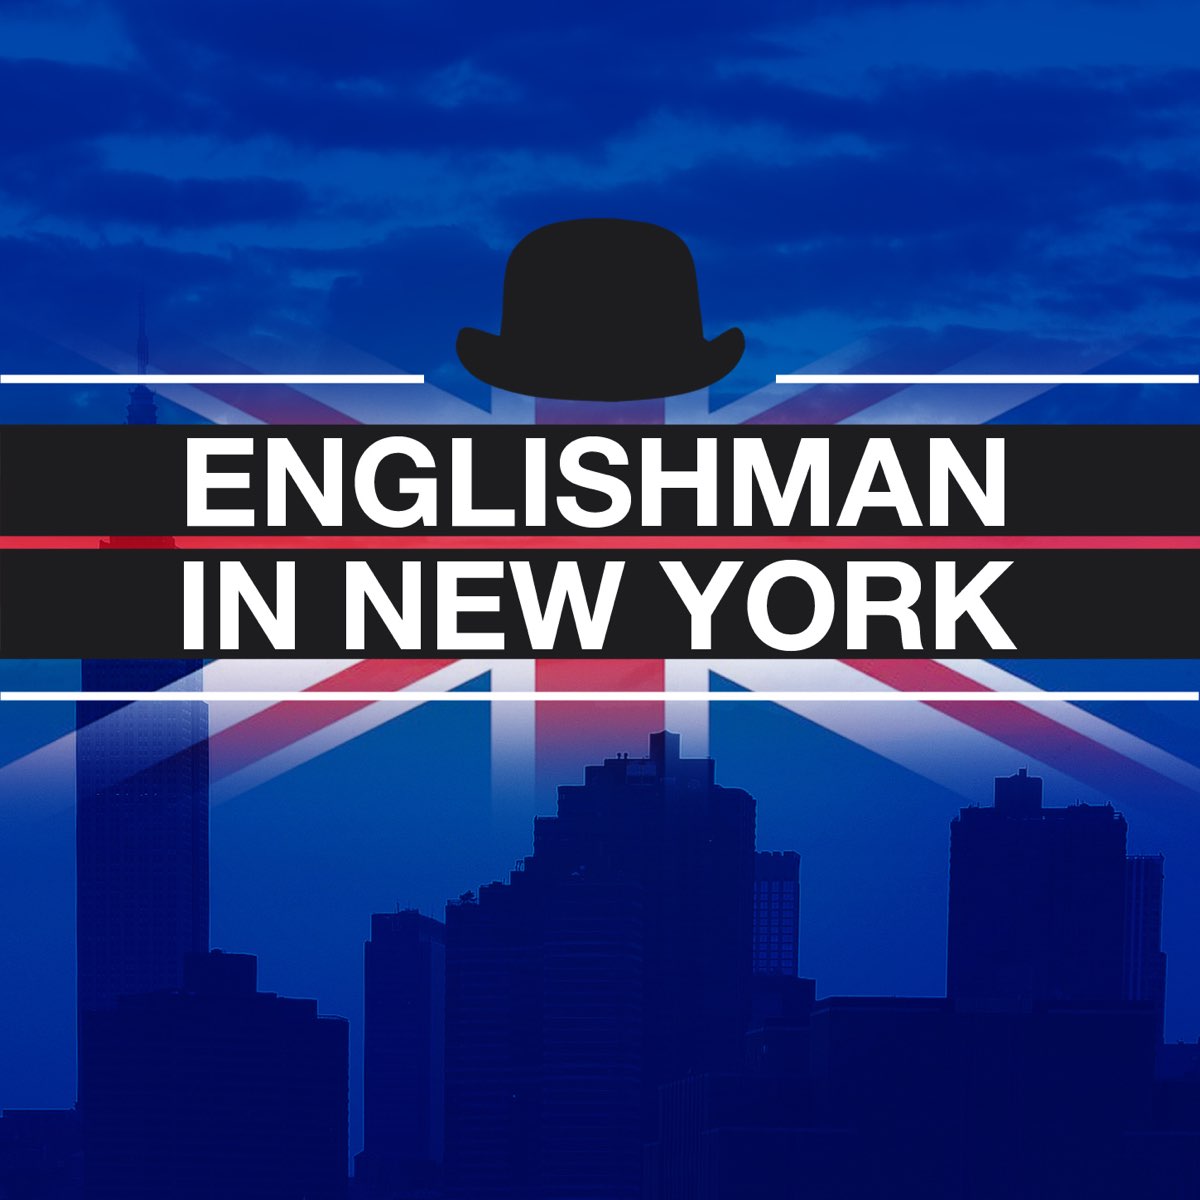 Инглиш Мэн. Englishman in New York обложка. Инглиш Мэн Мем. New York Orchestra логотип. Инглиш мен ин